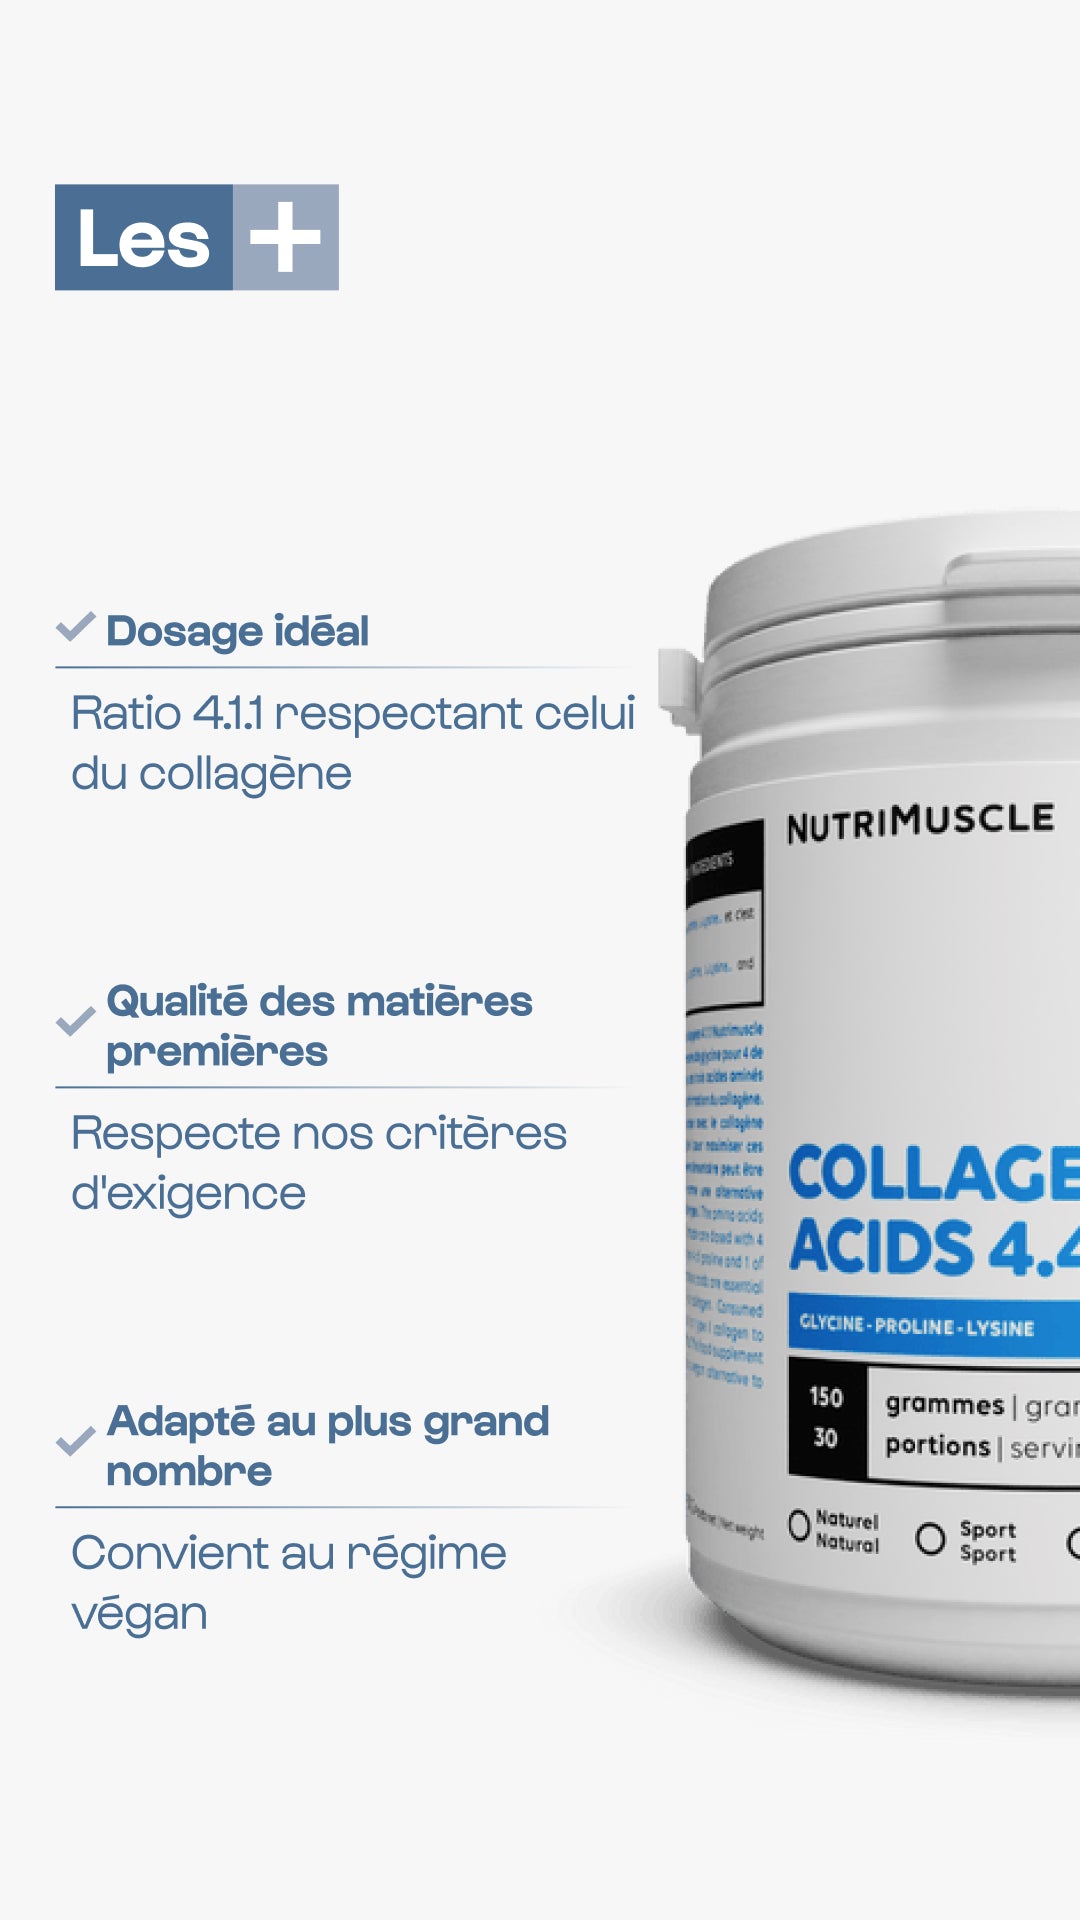 Un aminoacidi di collagene 4.4.1 polvere